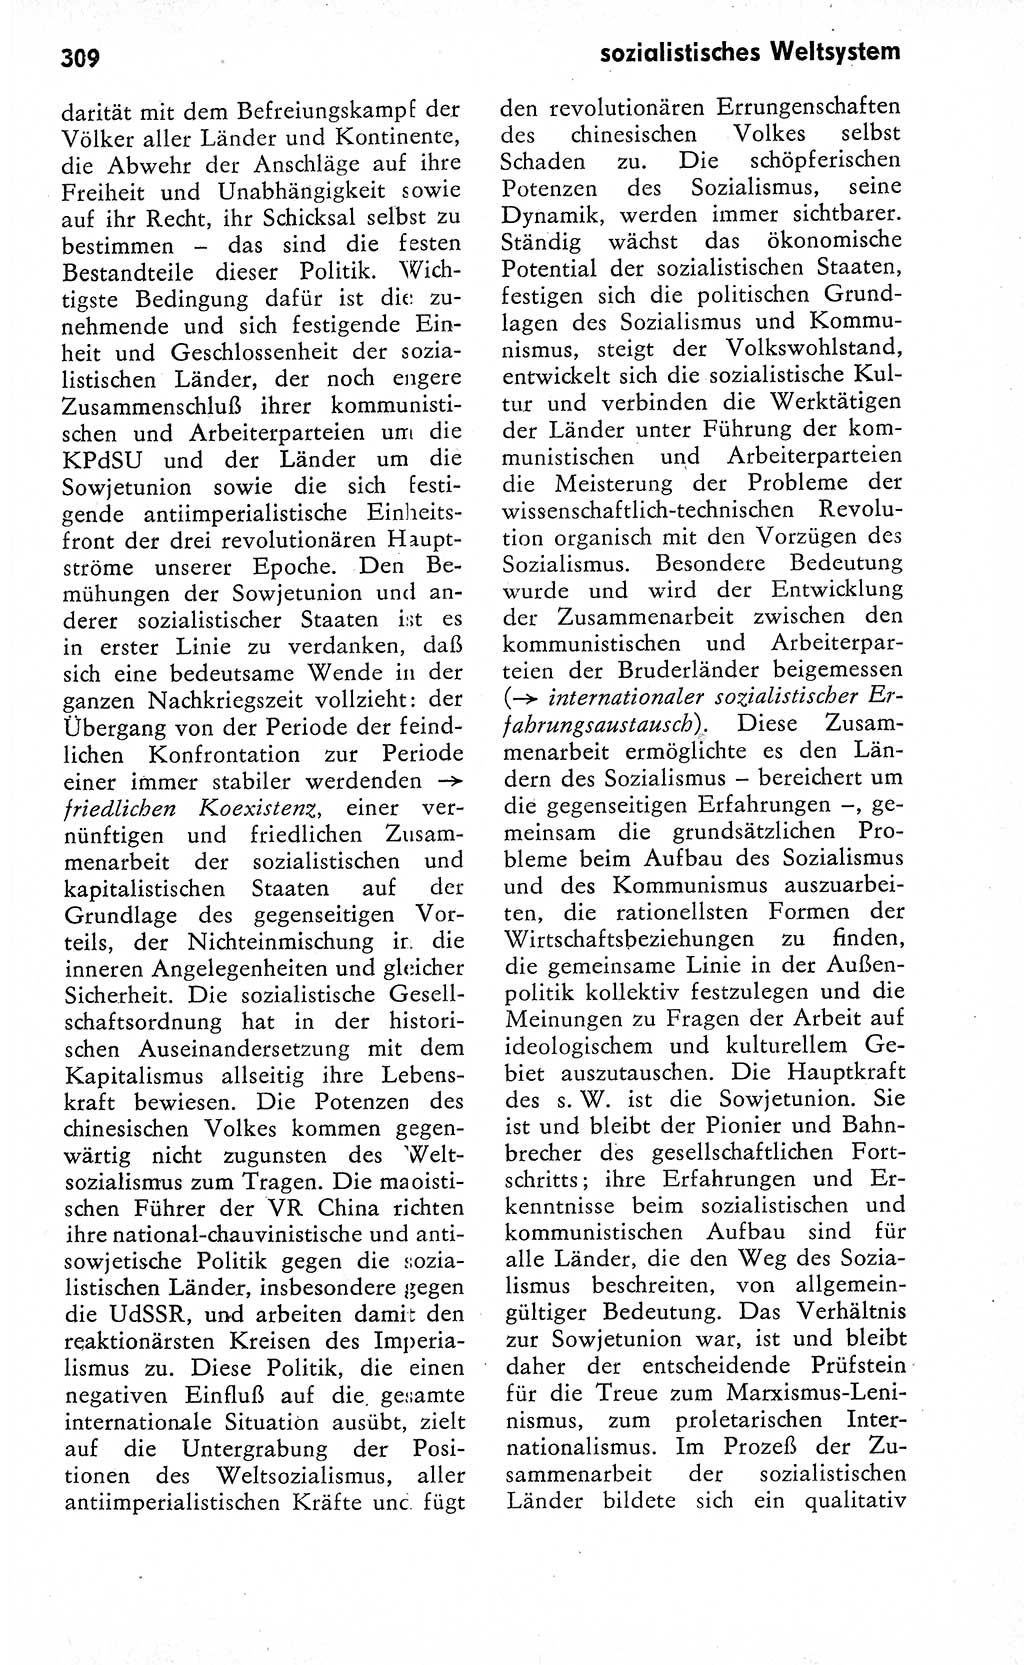 Wörterbuch zum sozialistischen Staat [Deutsche Demokratische Republik (DDR)] 1974, Seite 309 (Wb. soz. St. DDR 1974, S. 309)